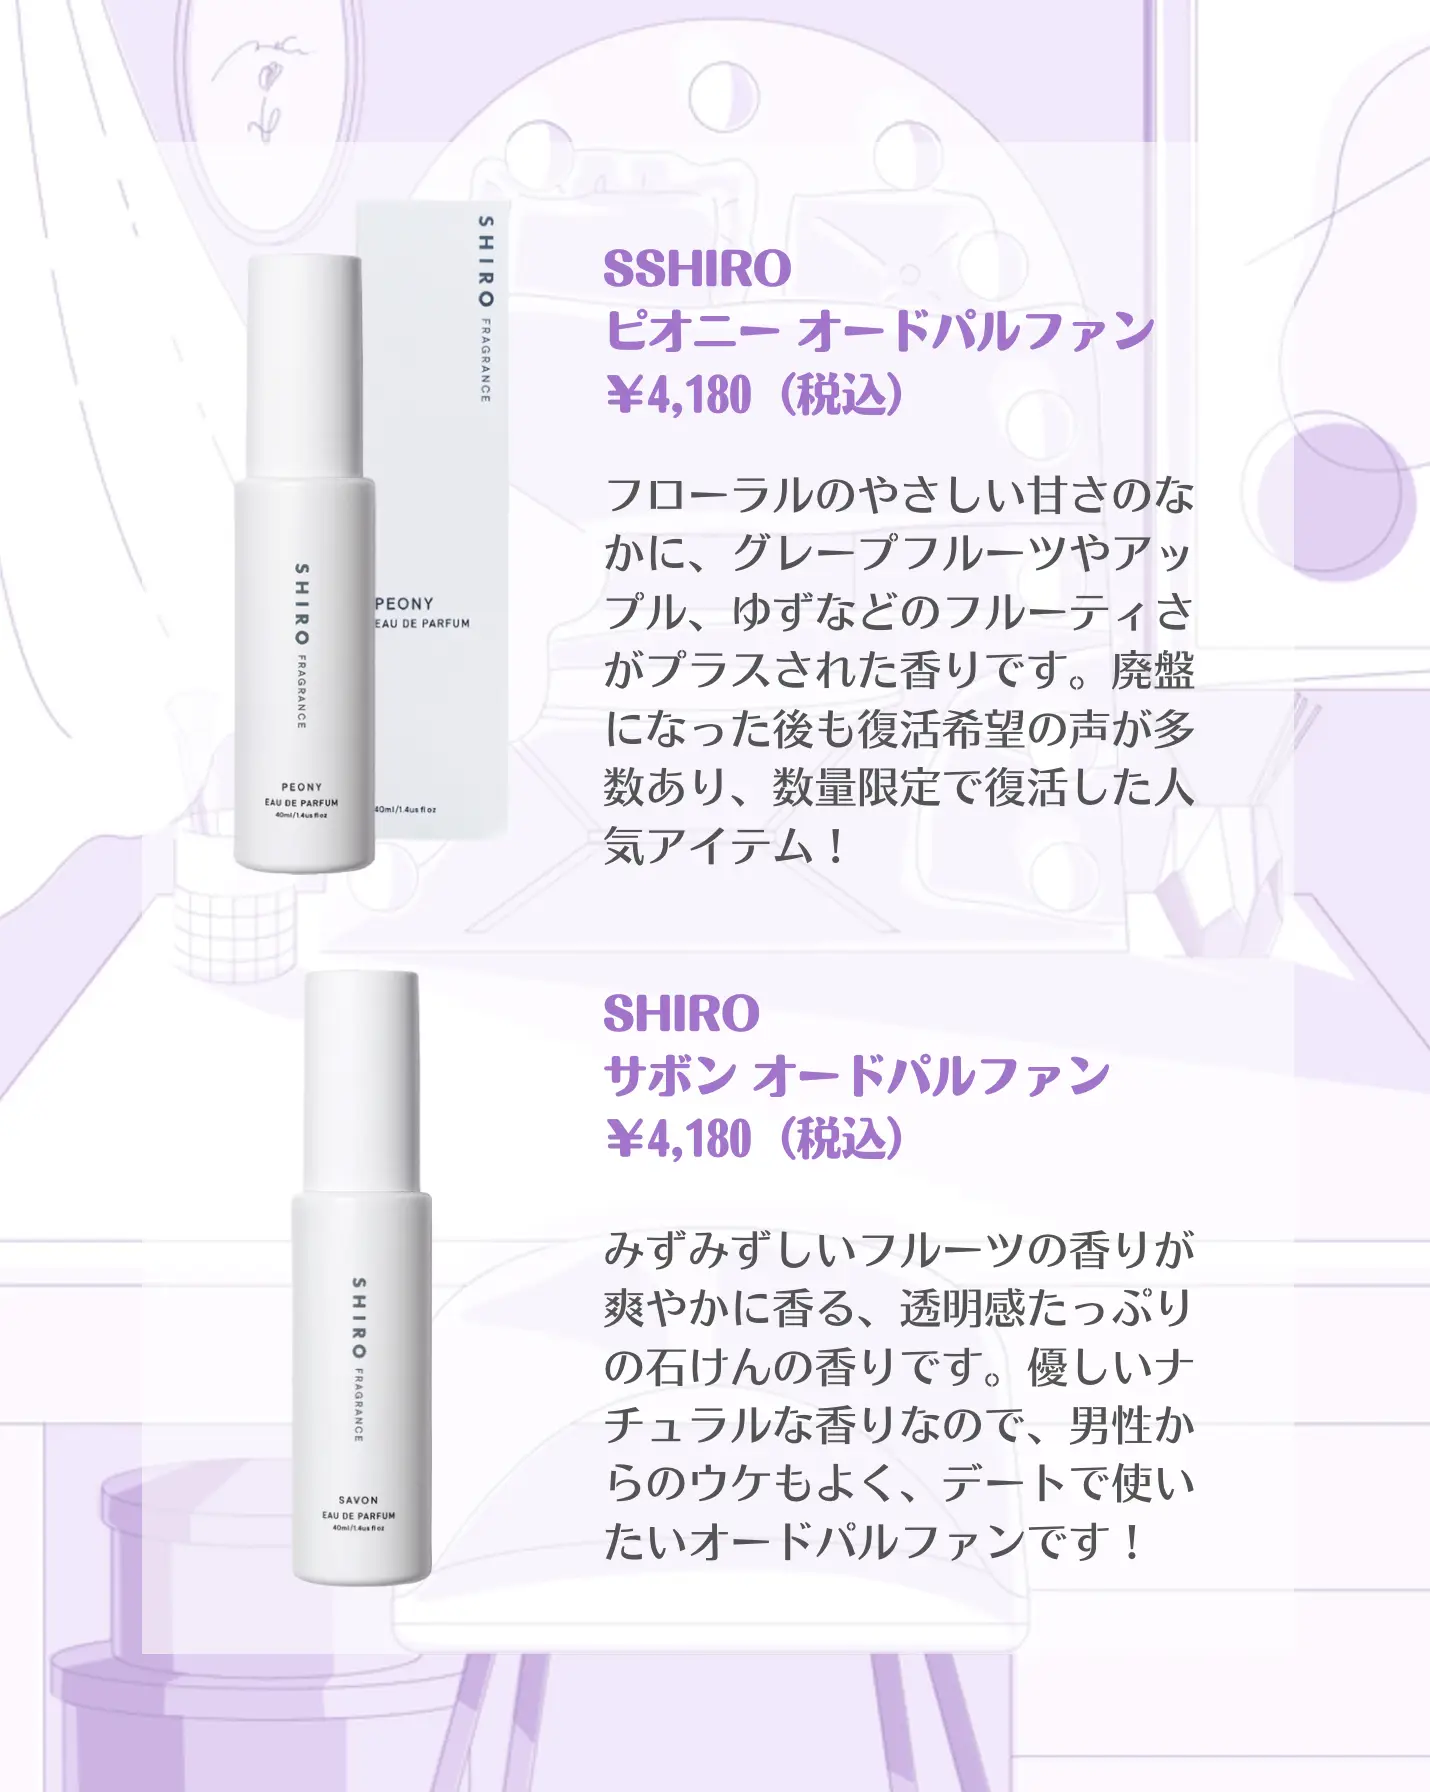 SHIRO オードパルファン 香り比較 | イエベちゃんが投稿したフォト